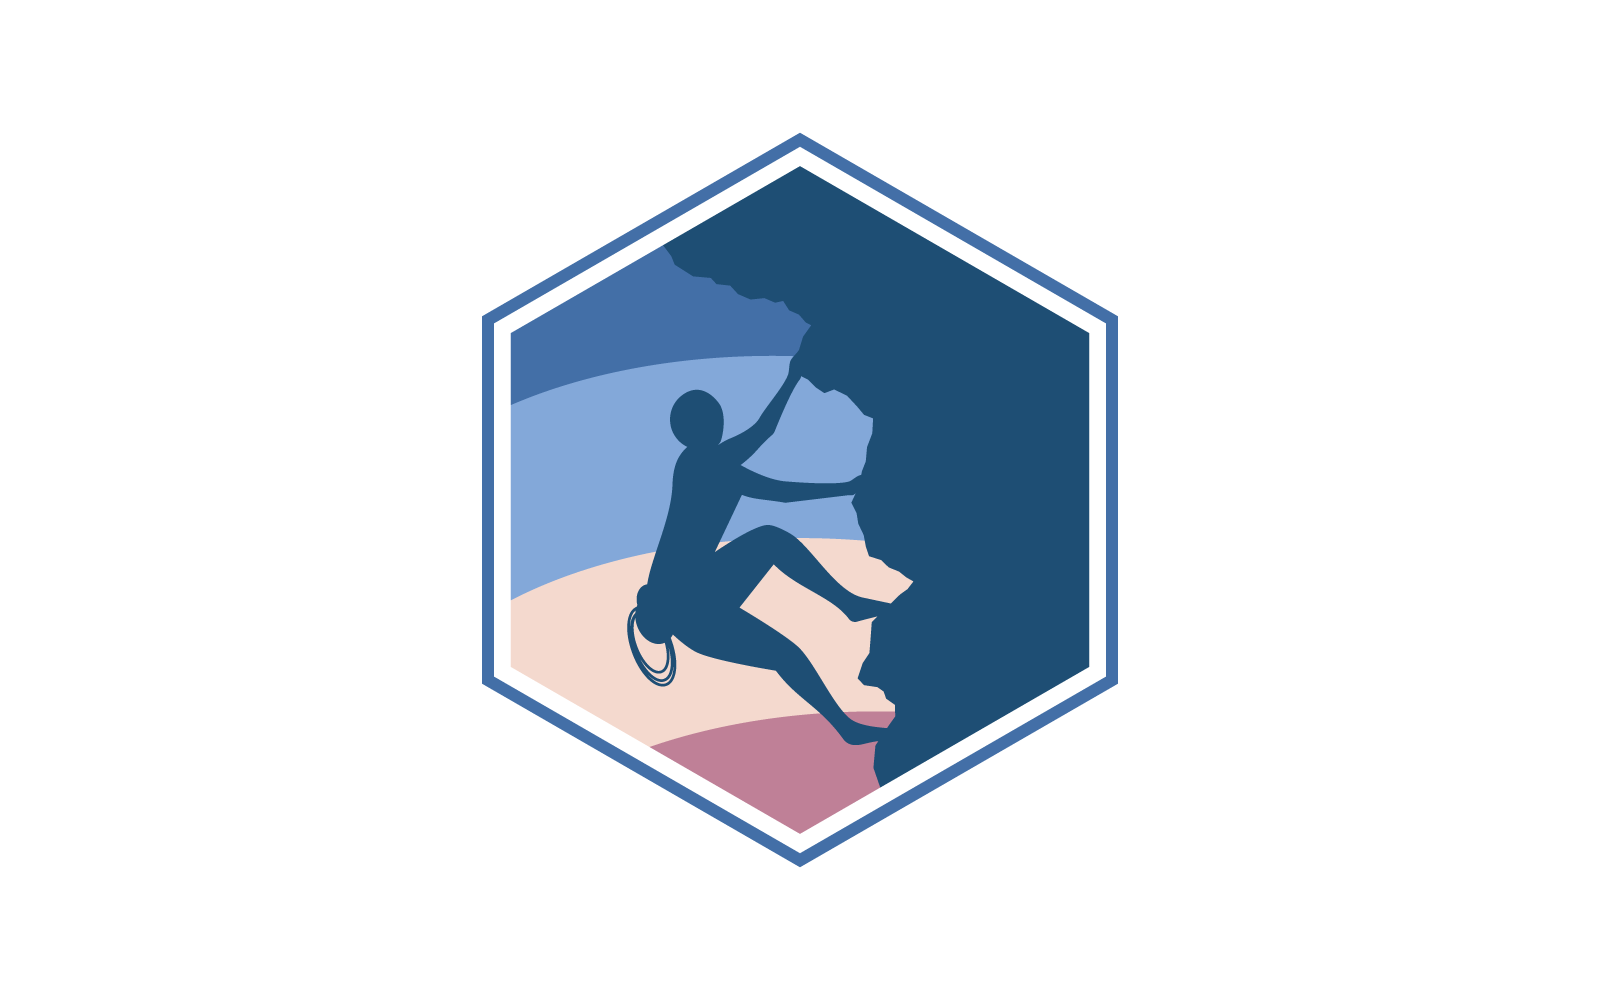 Rock climbing logo vector flat design icon template